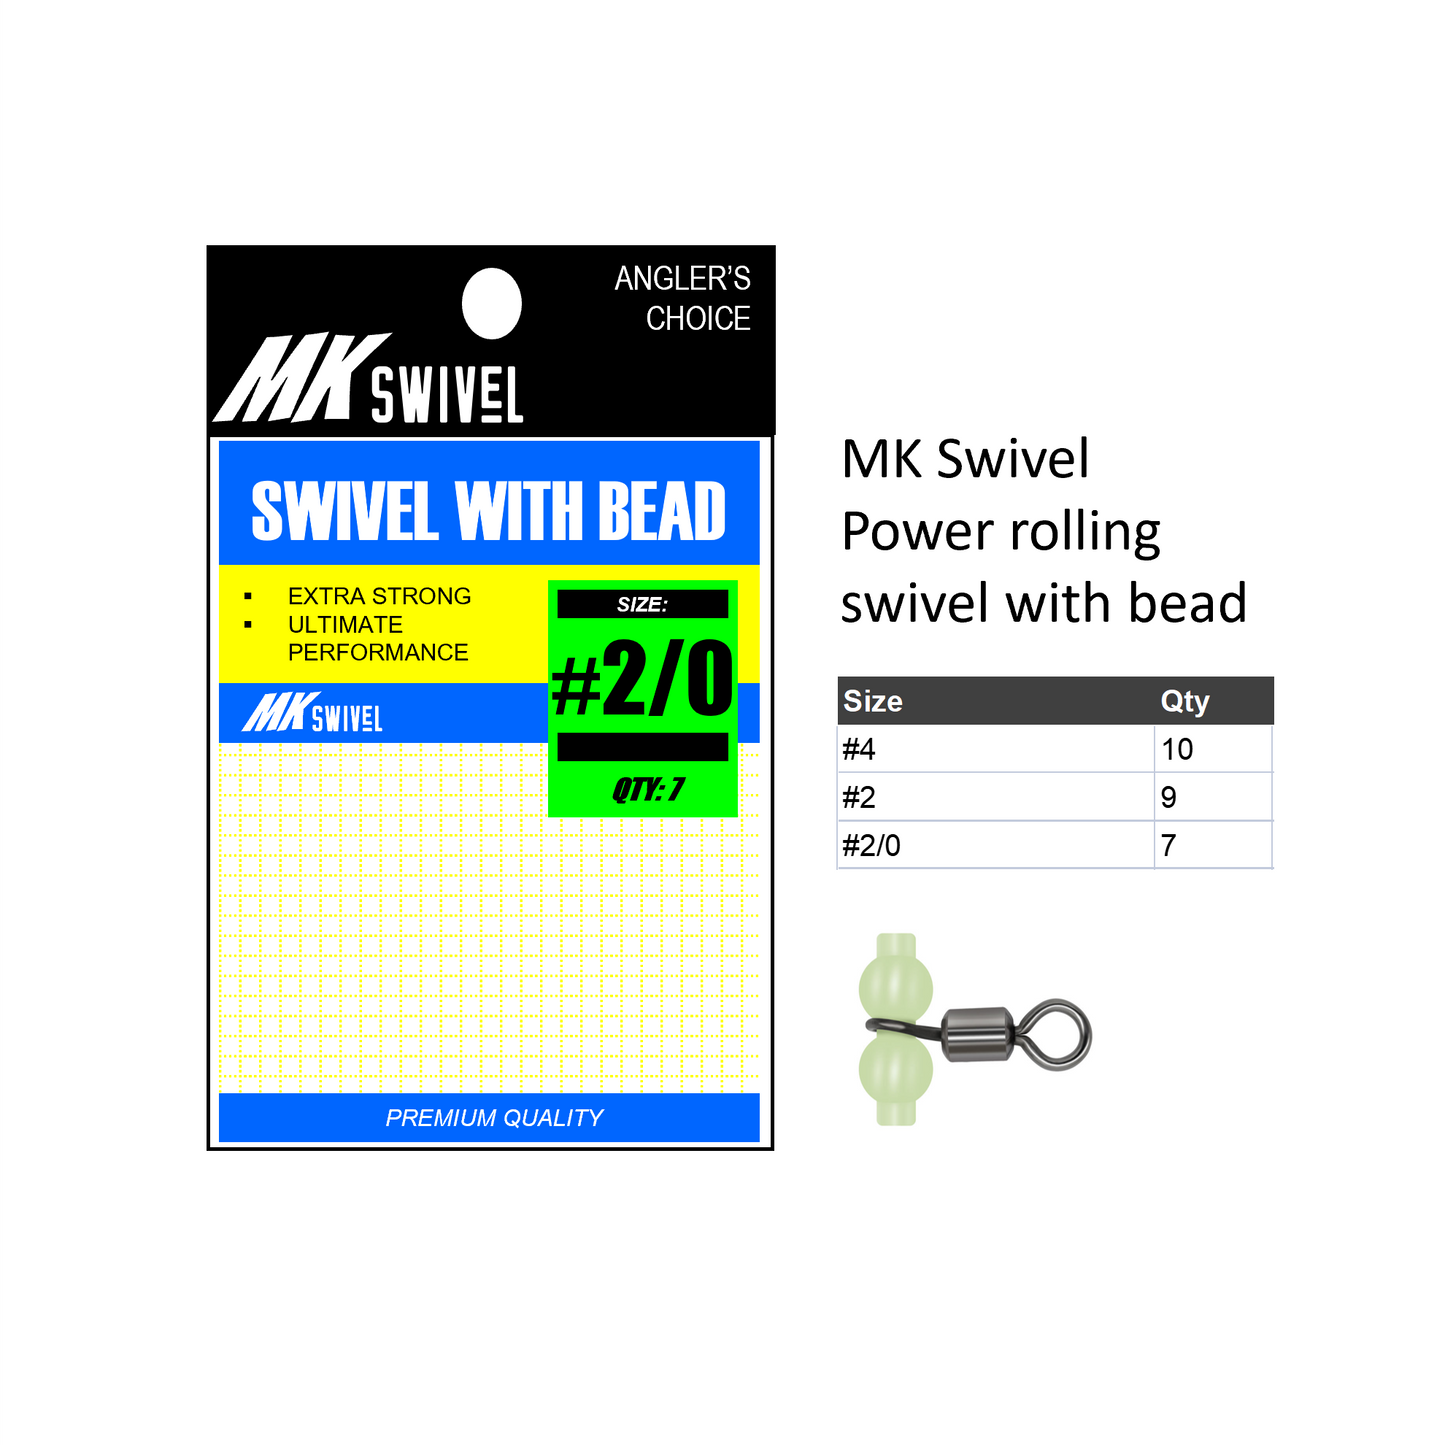 MK Swivel Power rolling swivel with bead MK035